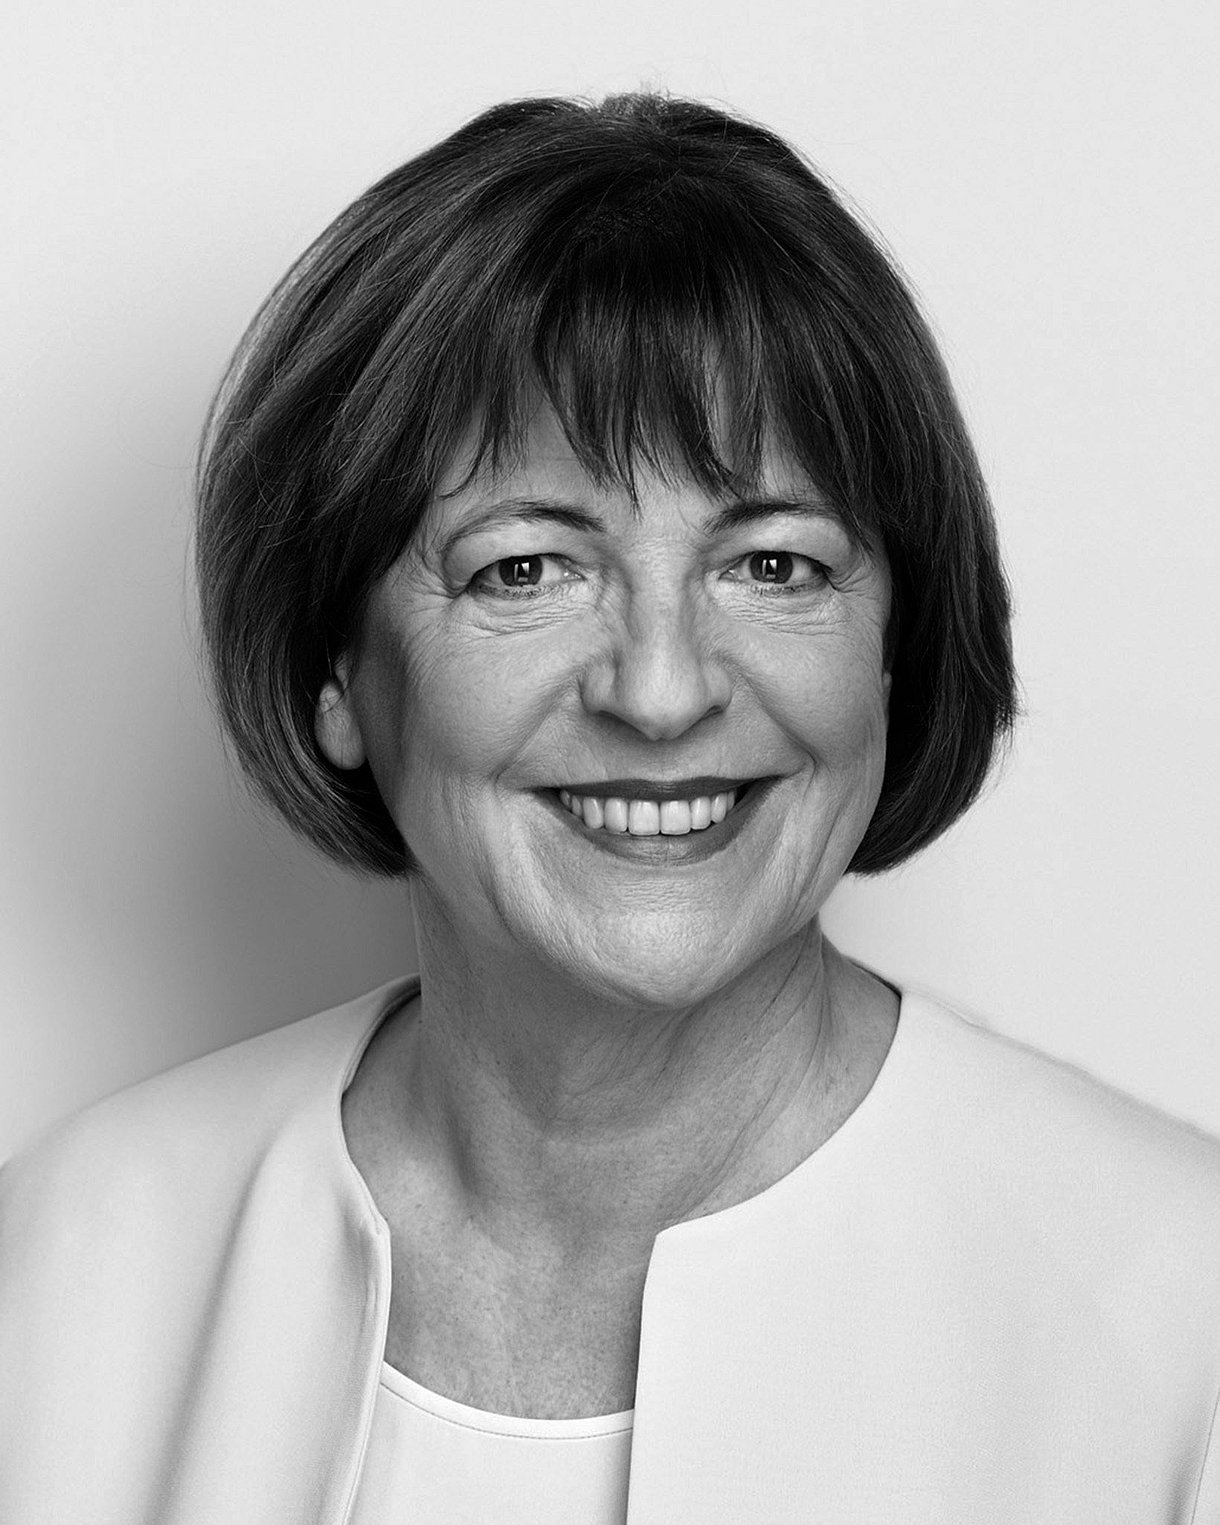 Foto: Porträtbild von Ulla Schmidt, SPD-Politikerin und  ehemalige Bundesgesundheitsministerin von 2001 bis 2009